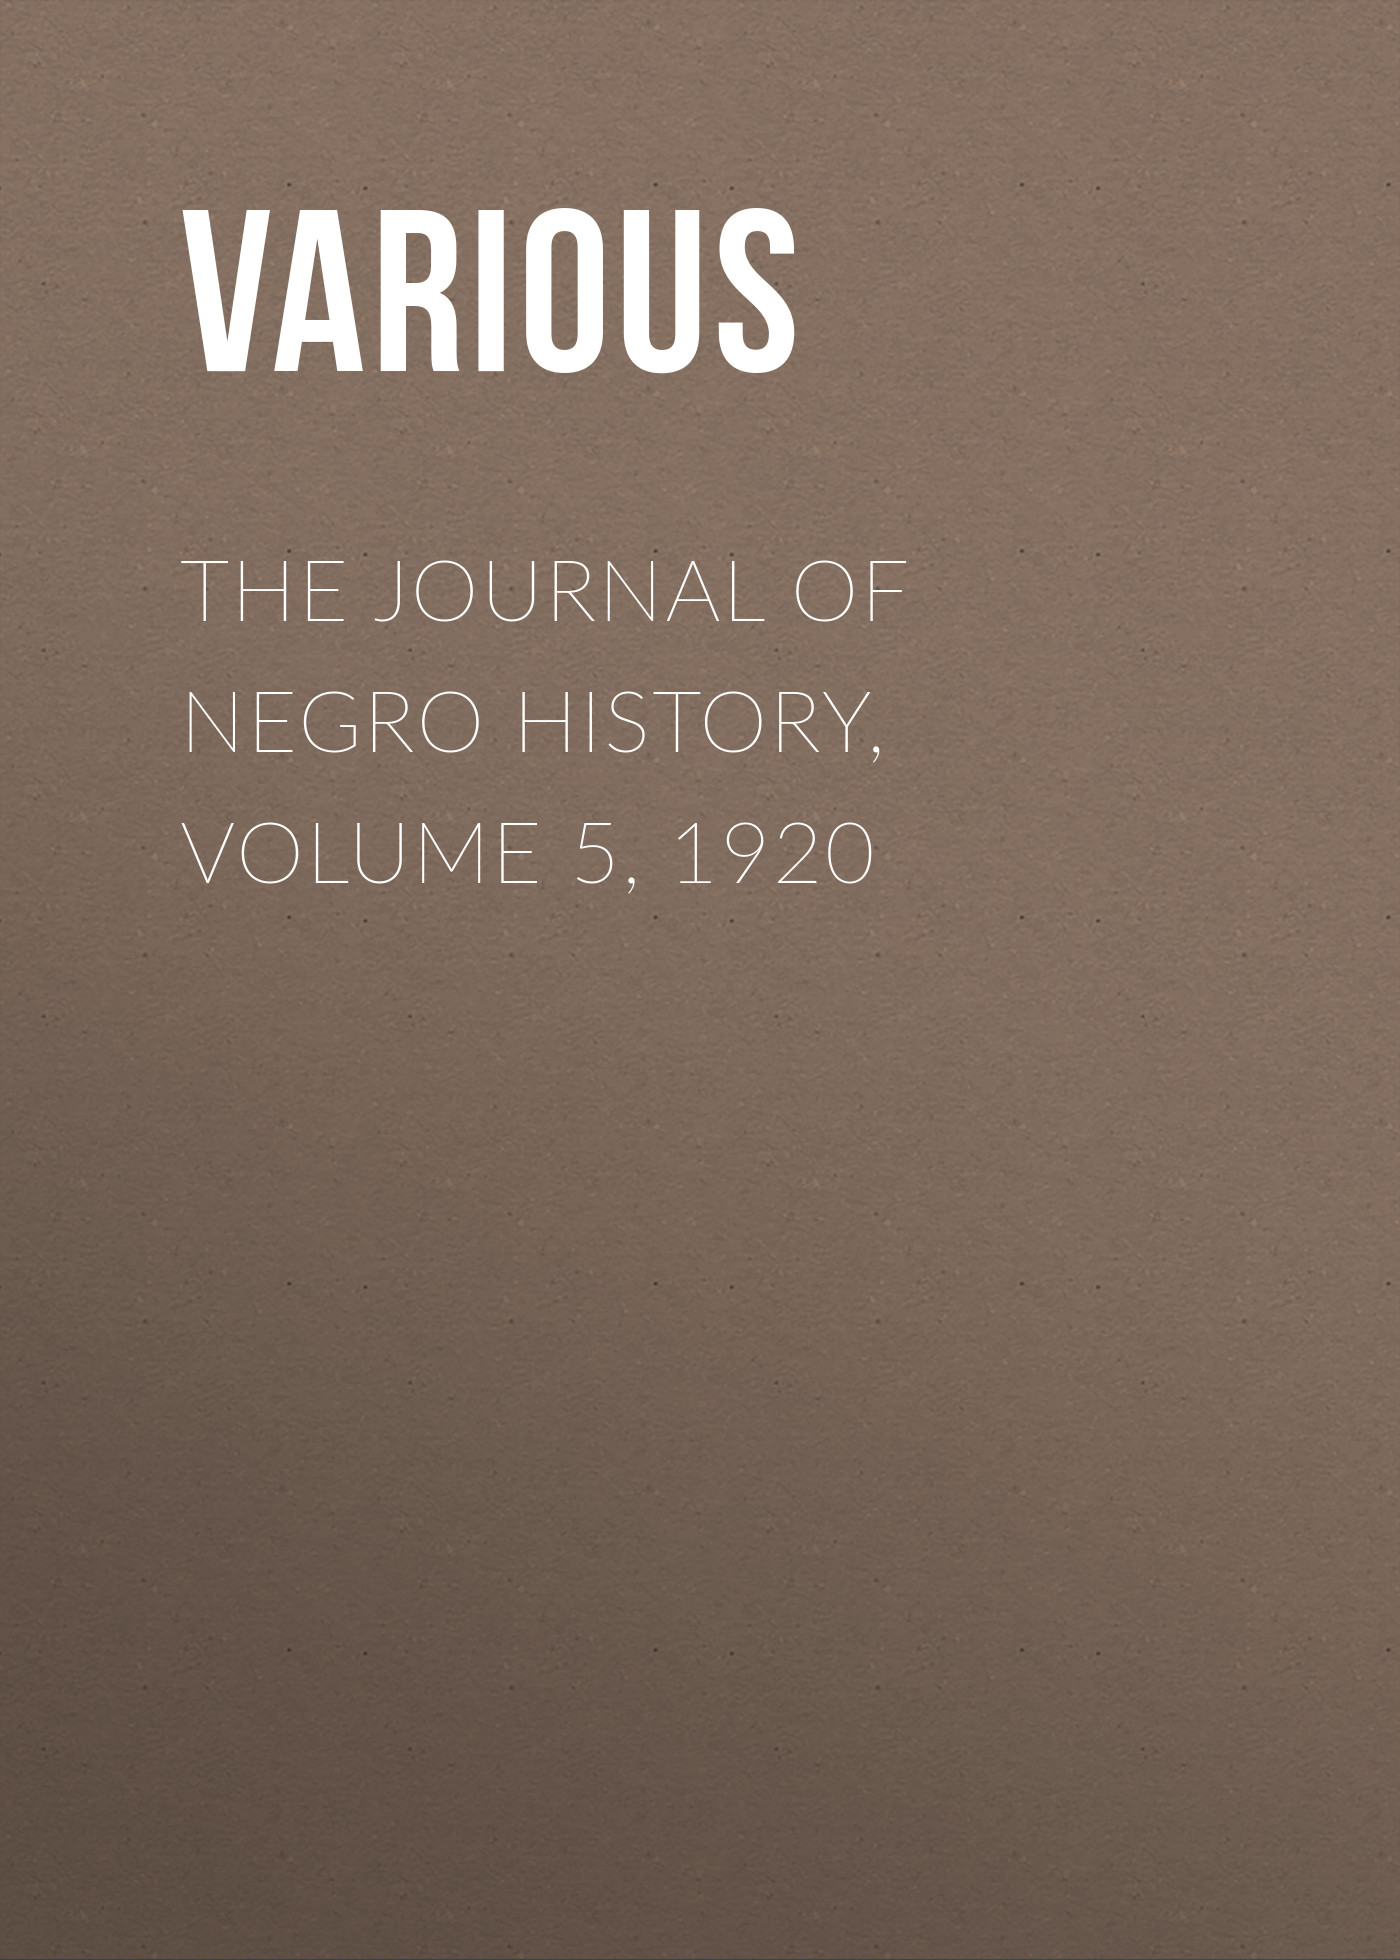 Книга The Journal of Negro History, Volume 5, 1920 из серии , созданная  Various, может относится к жанру Зарубежная старинная литература, Журналы, История, Зарубежная образовательная литература. Стоимость электронной книги The Journal of Negro History, Volume 5, 1920 с идентификатором 35504107 составляет 0 руб.